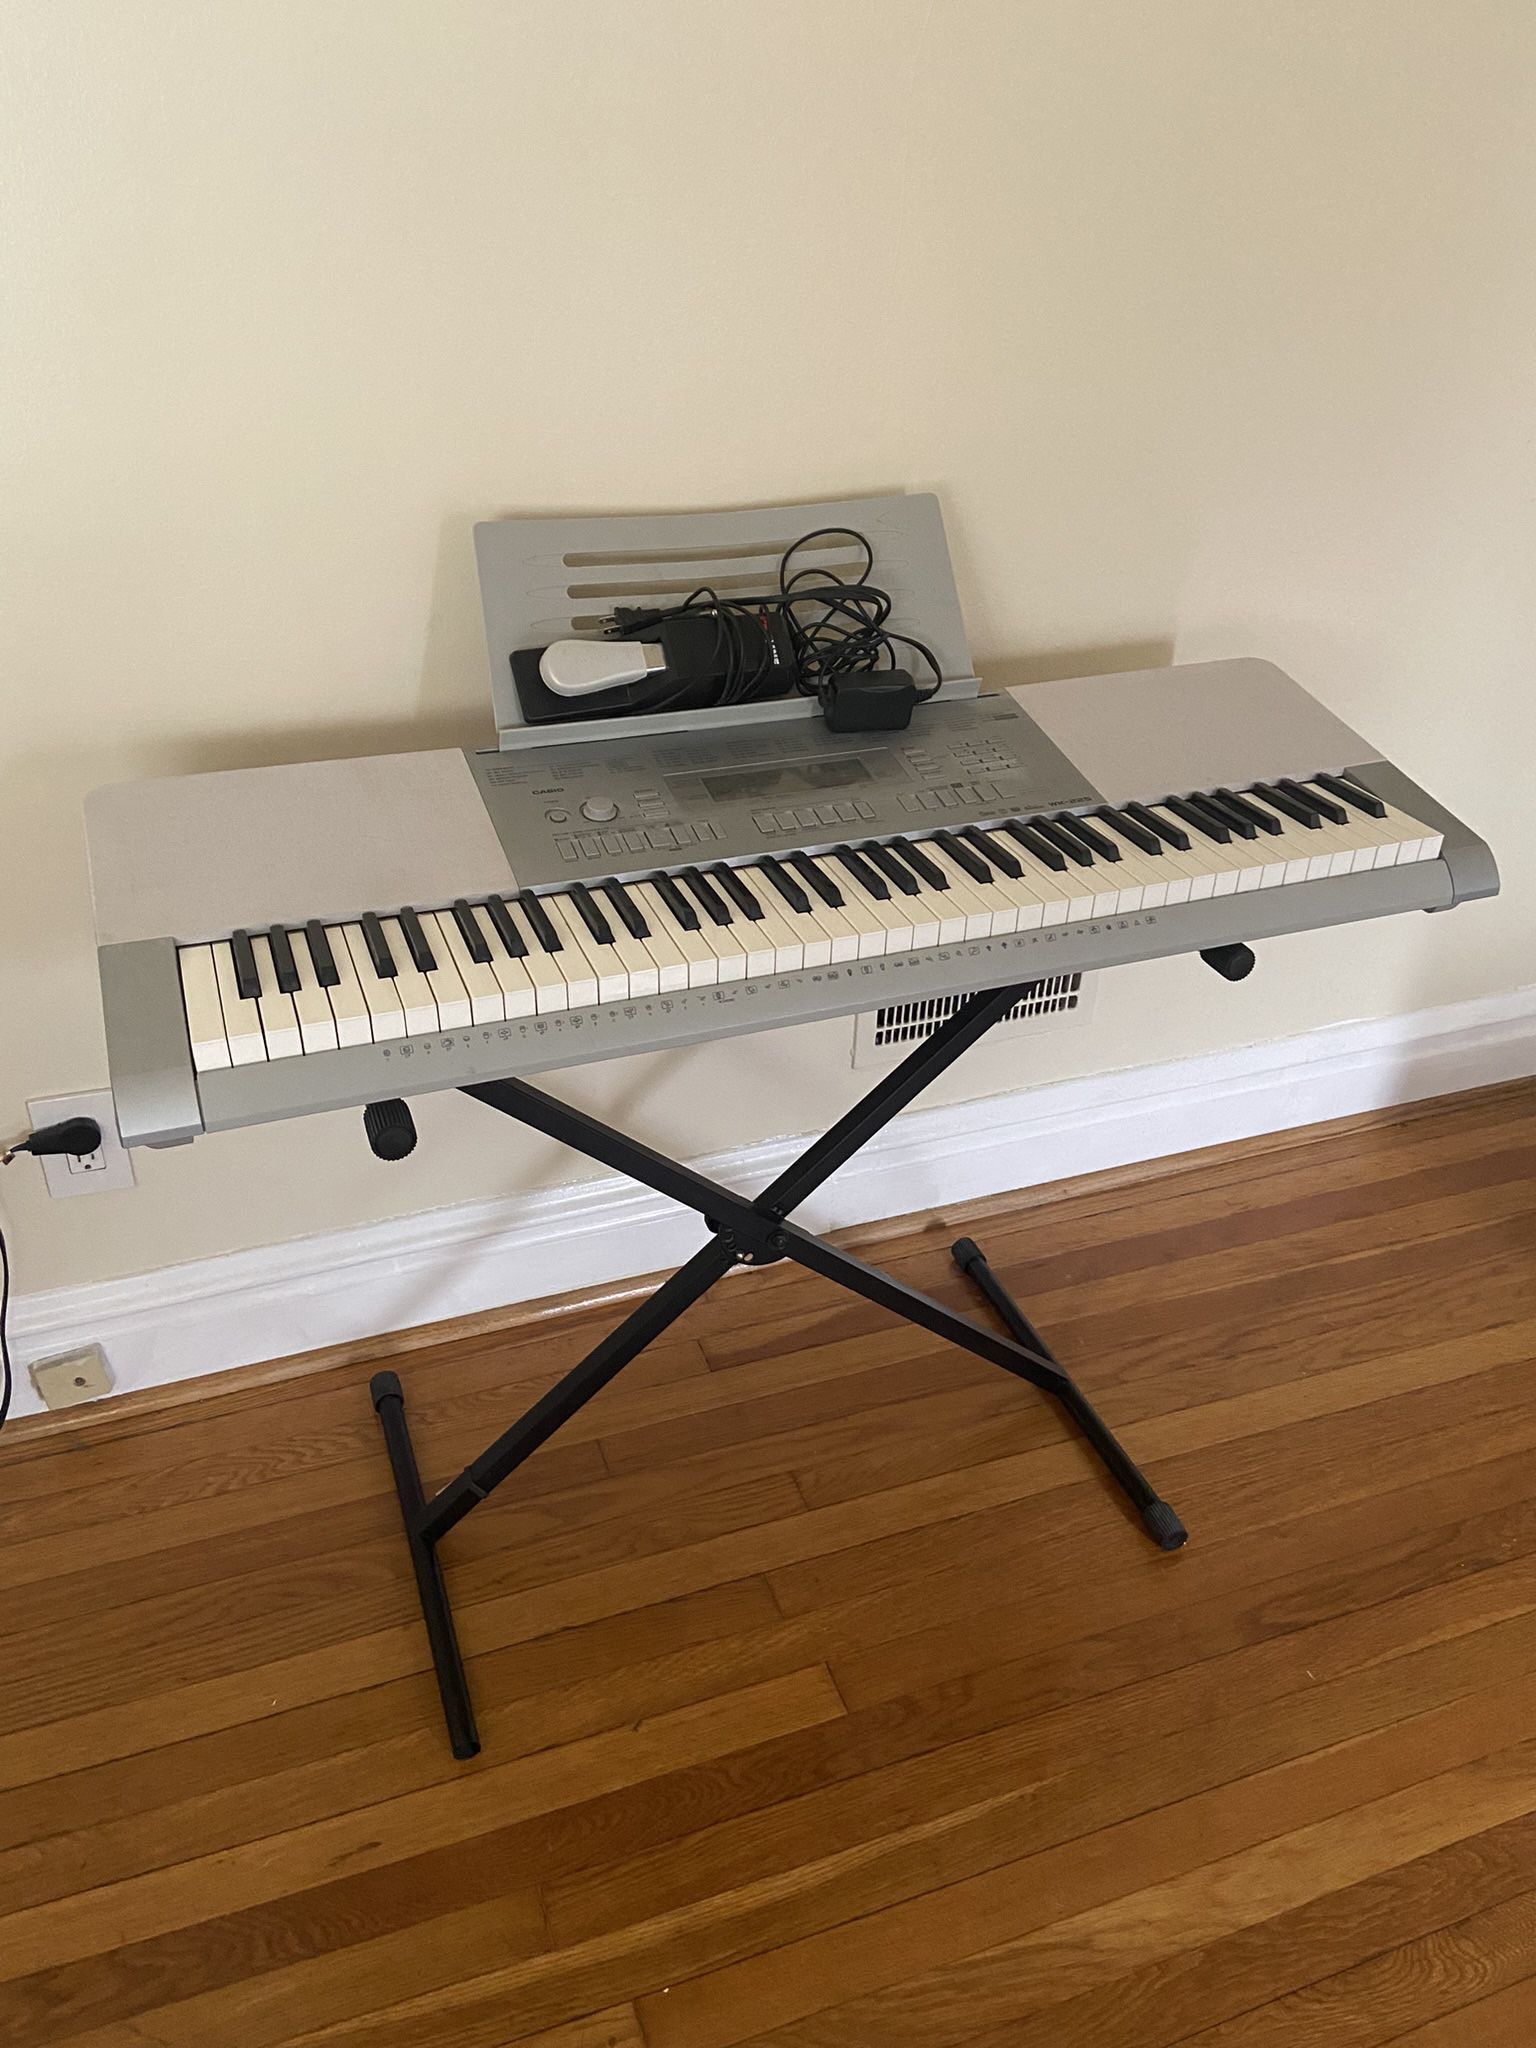 Casio WK-225 Keyboard Piano 